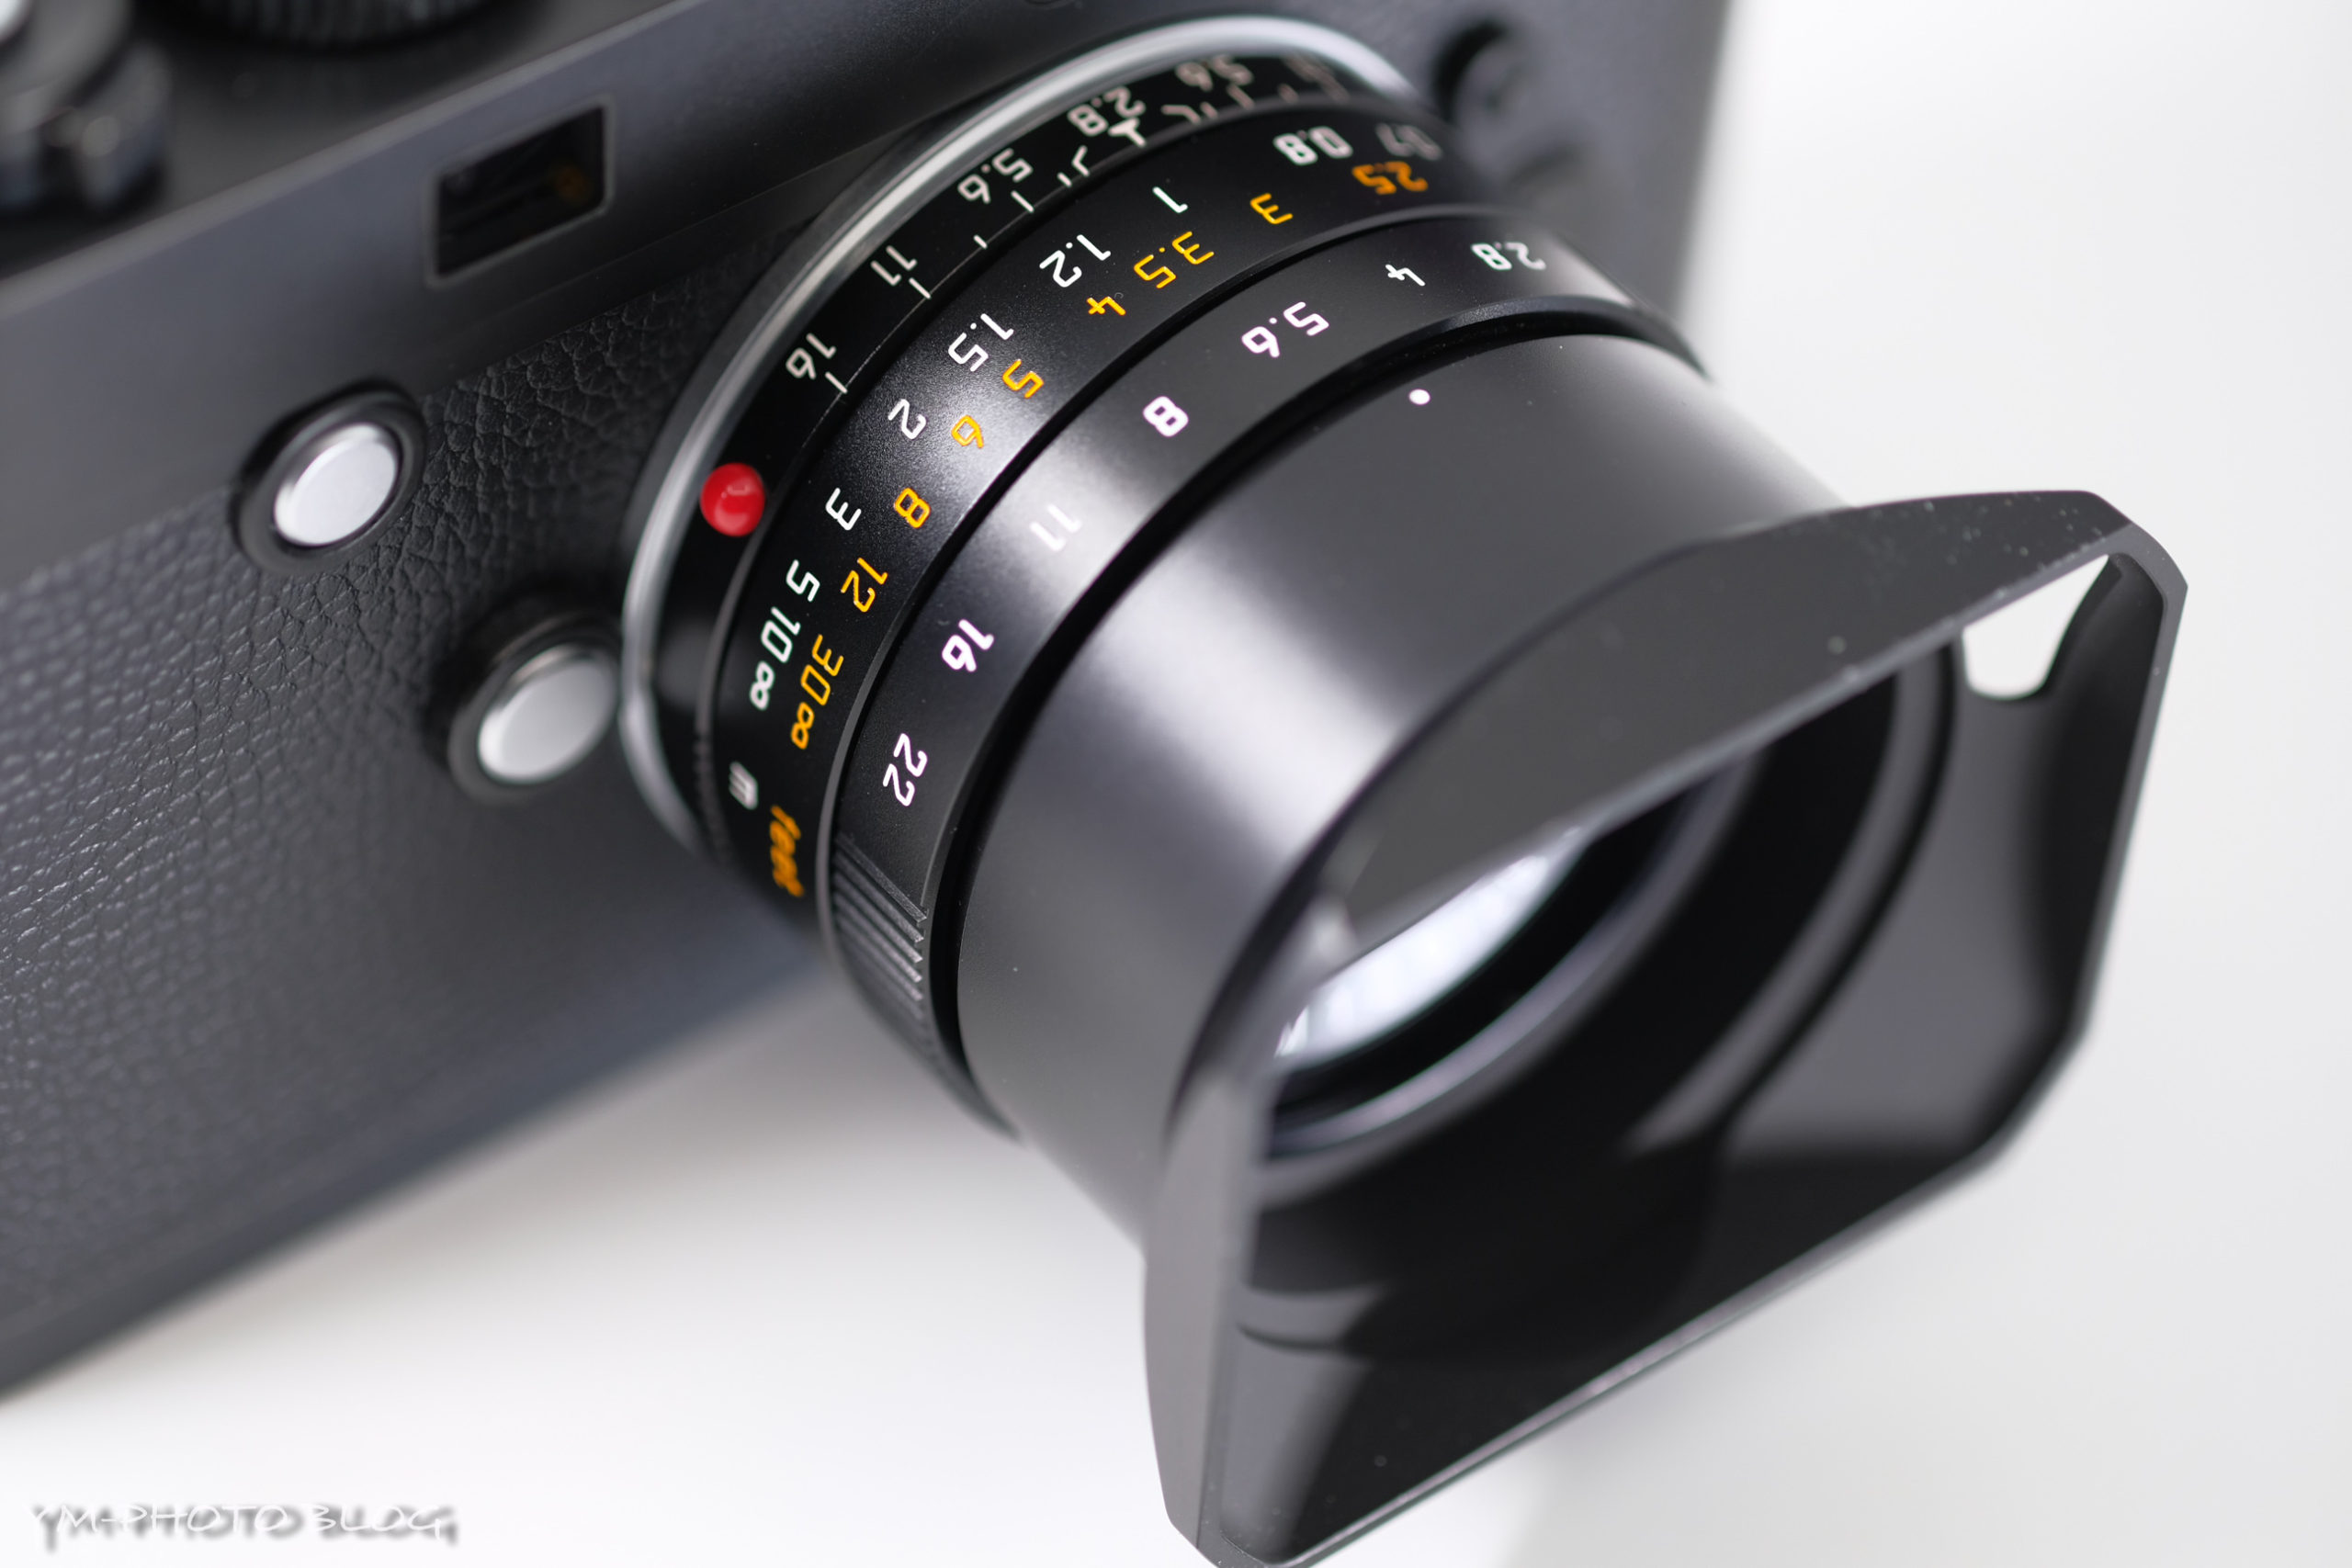 LEICA ELMARIT-M f2.8/28mm ASPH.のレビュー - YM-PHOTO BLOG